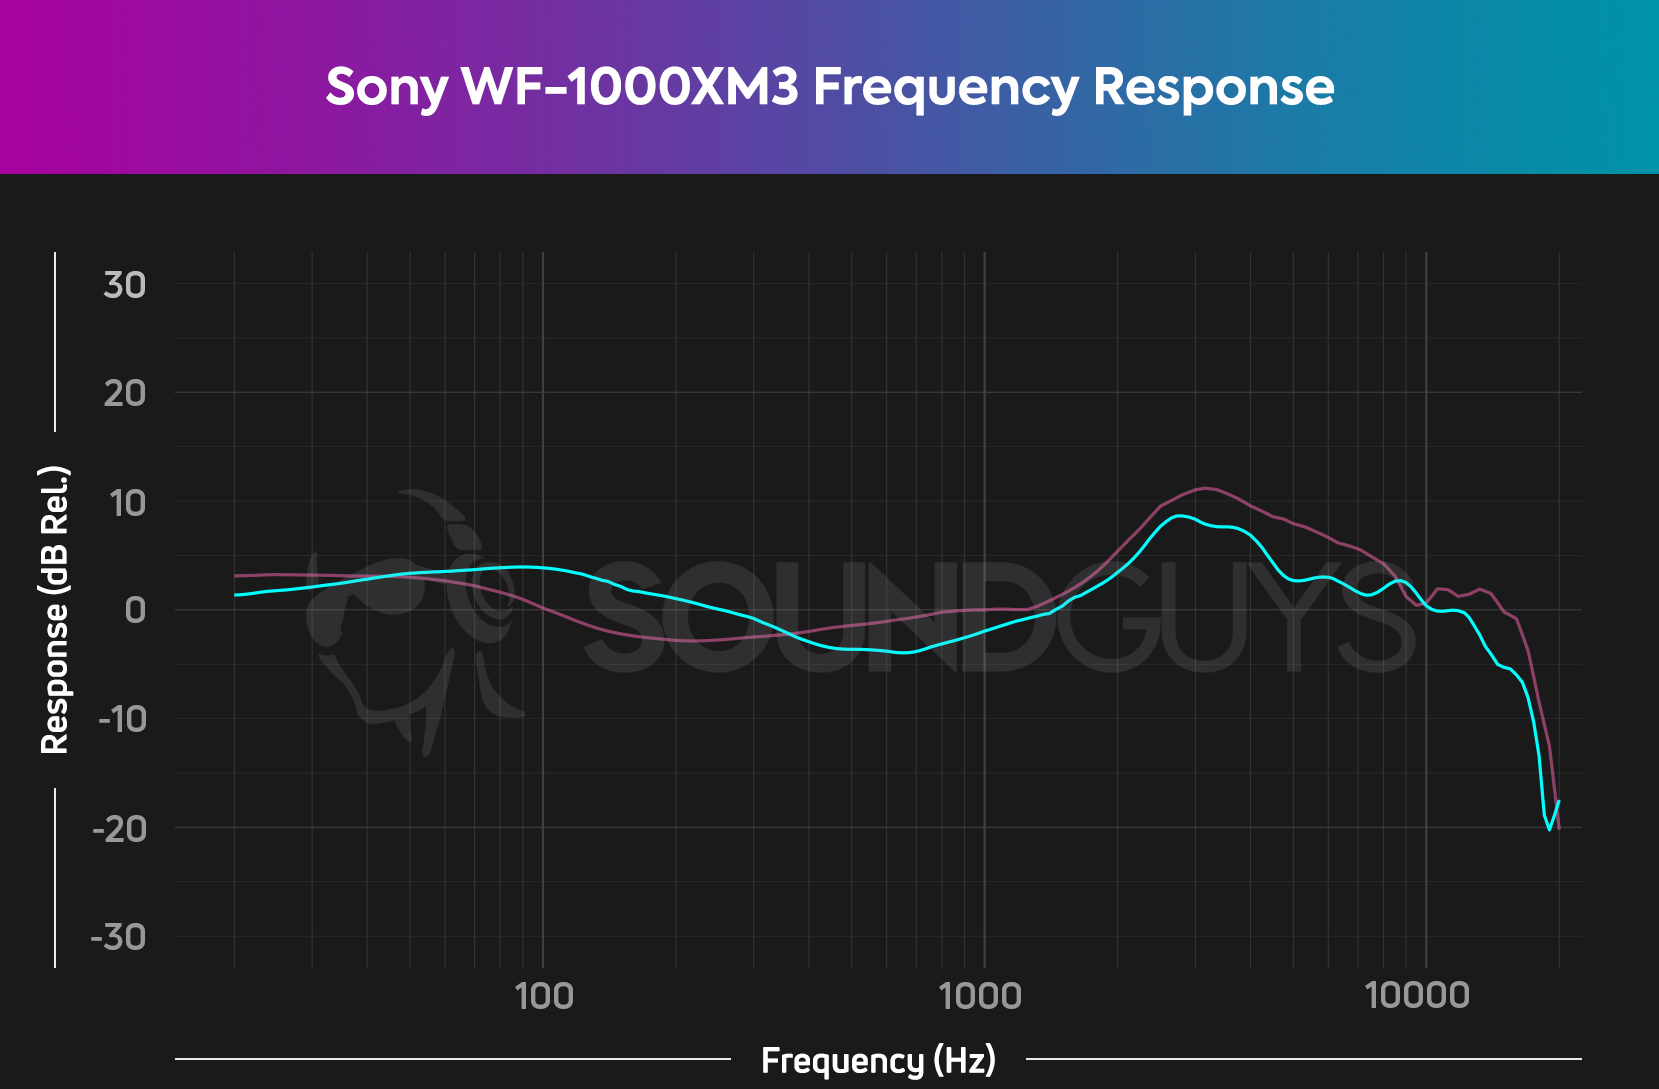 Sony WF-1000XM3噪声噪声真实无线耳机的频率响应图。